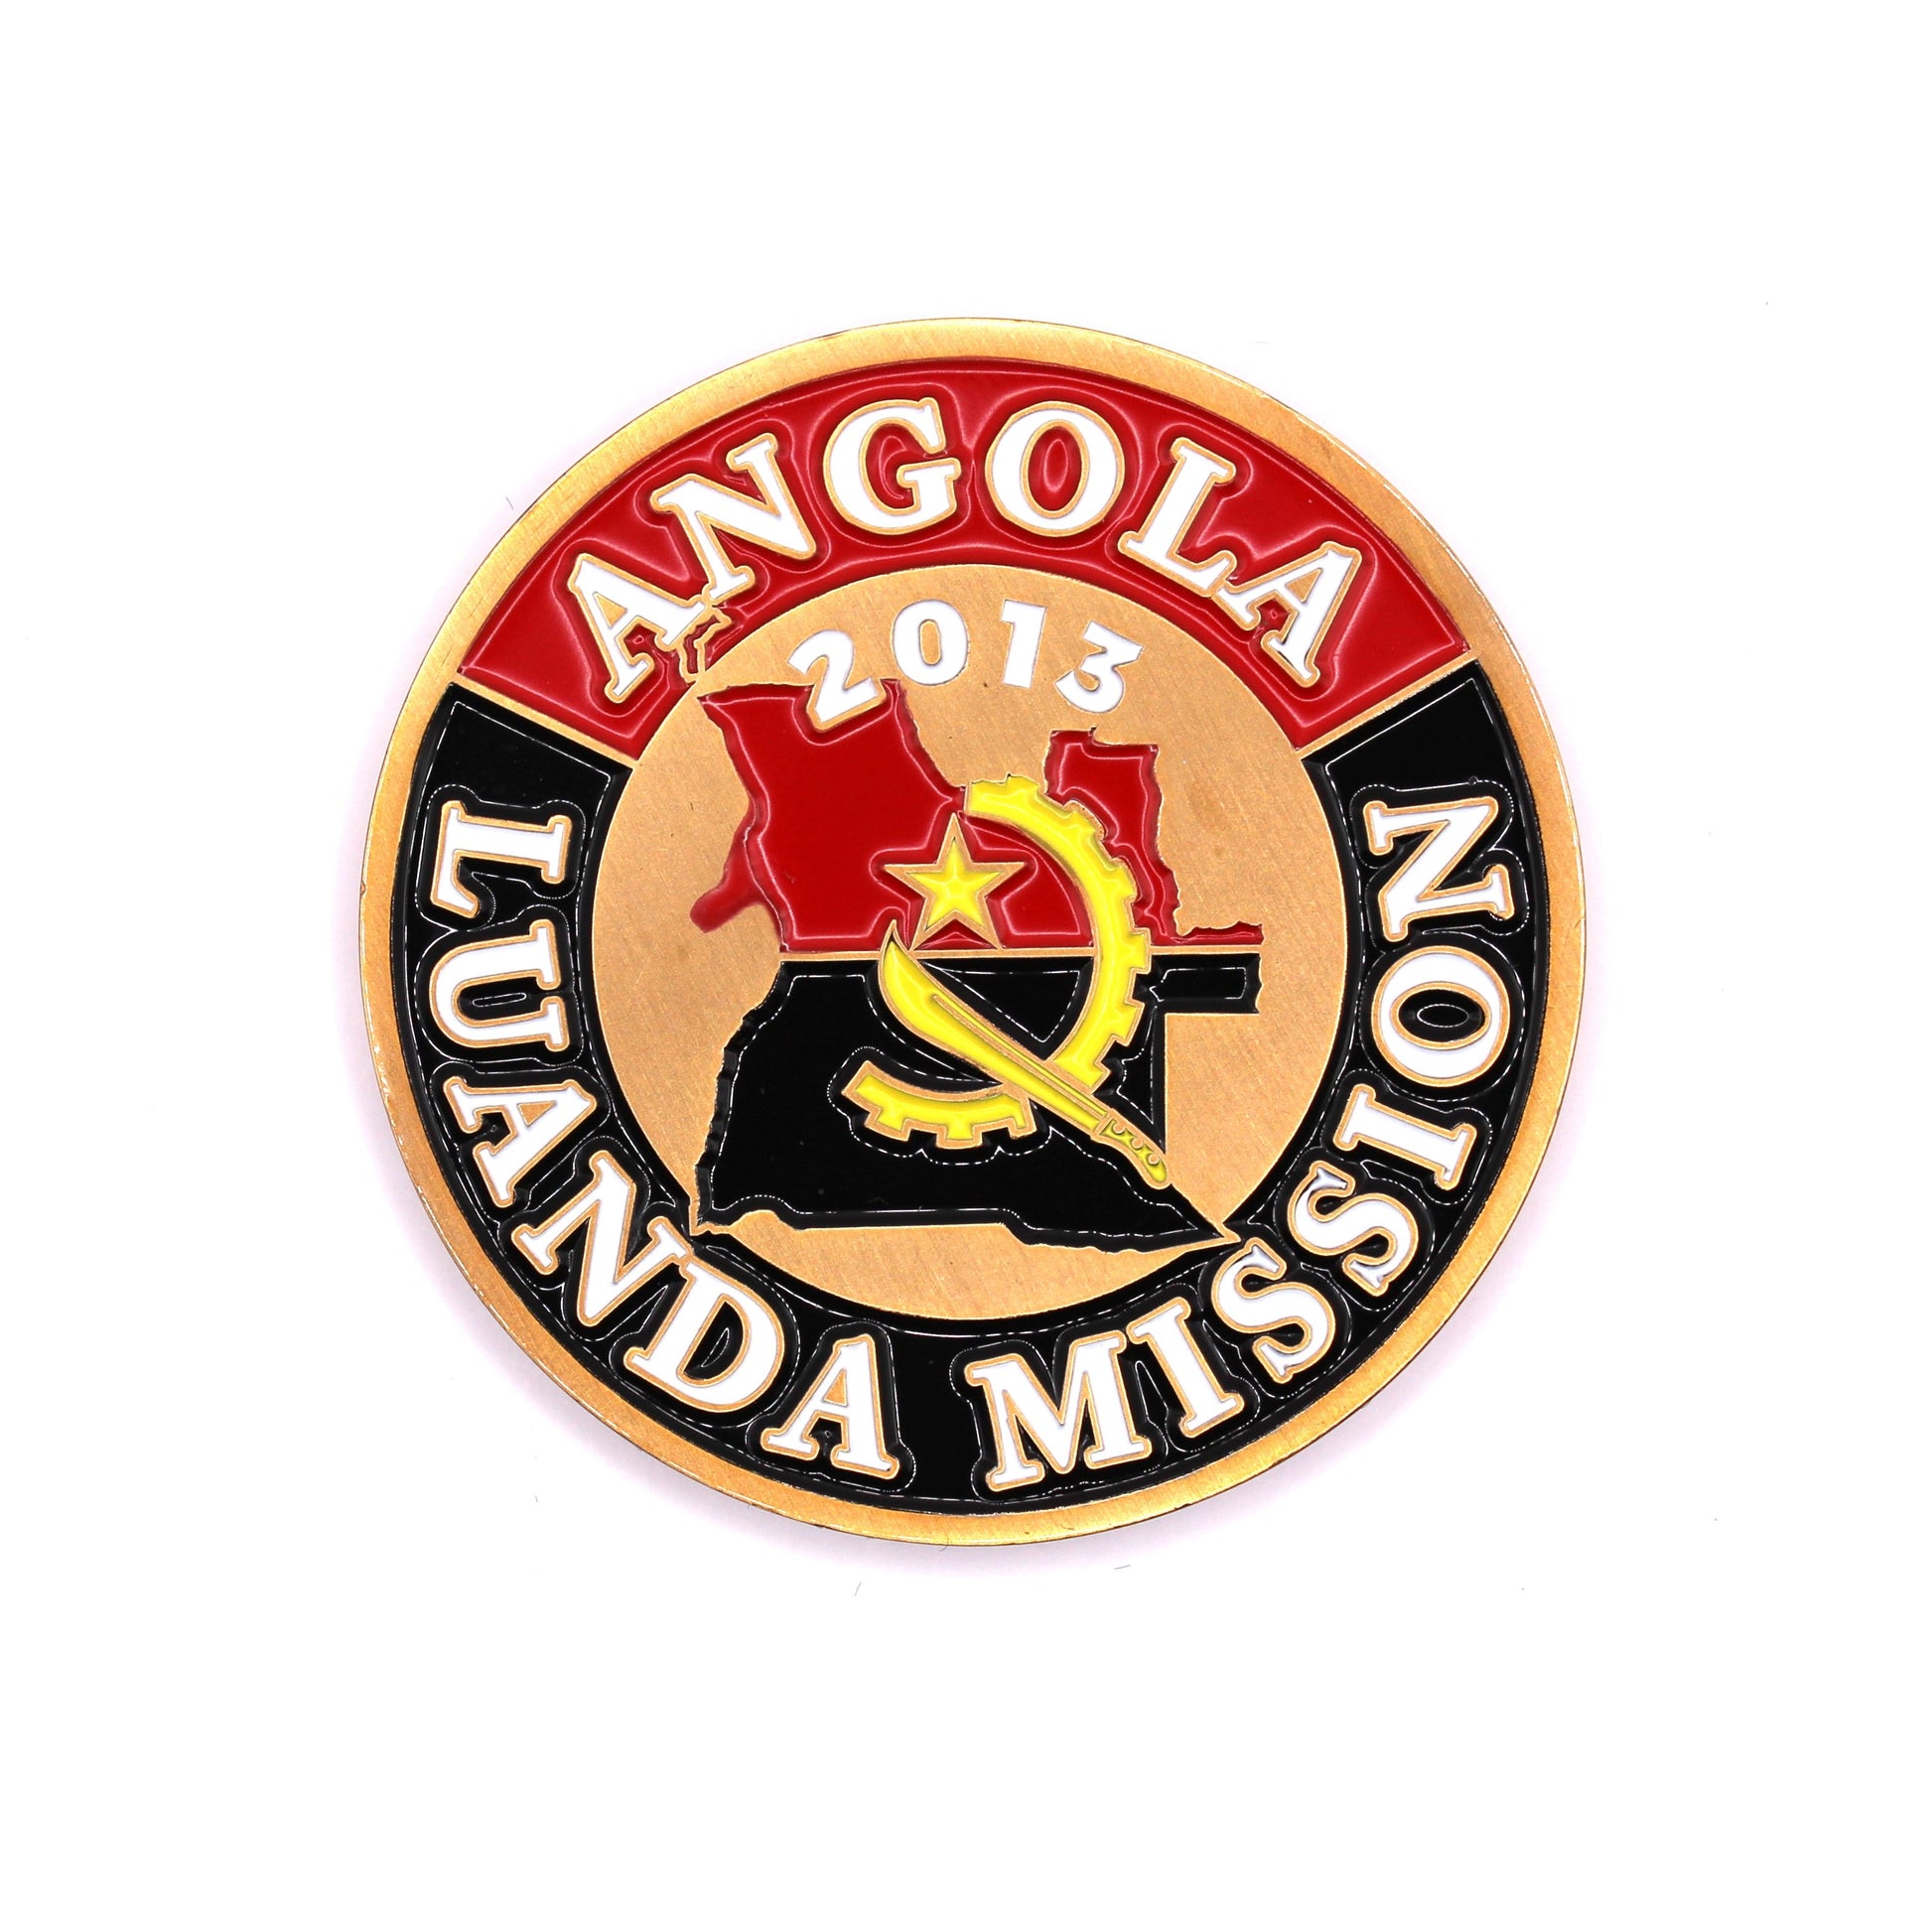 angola luanda mission coin